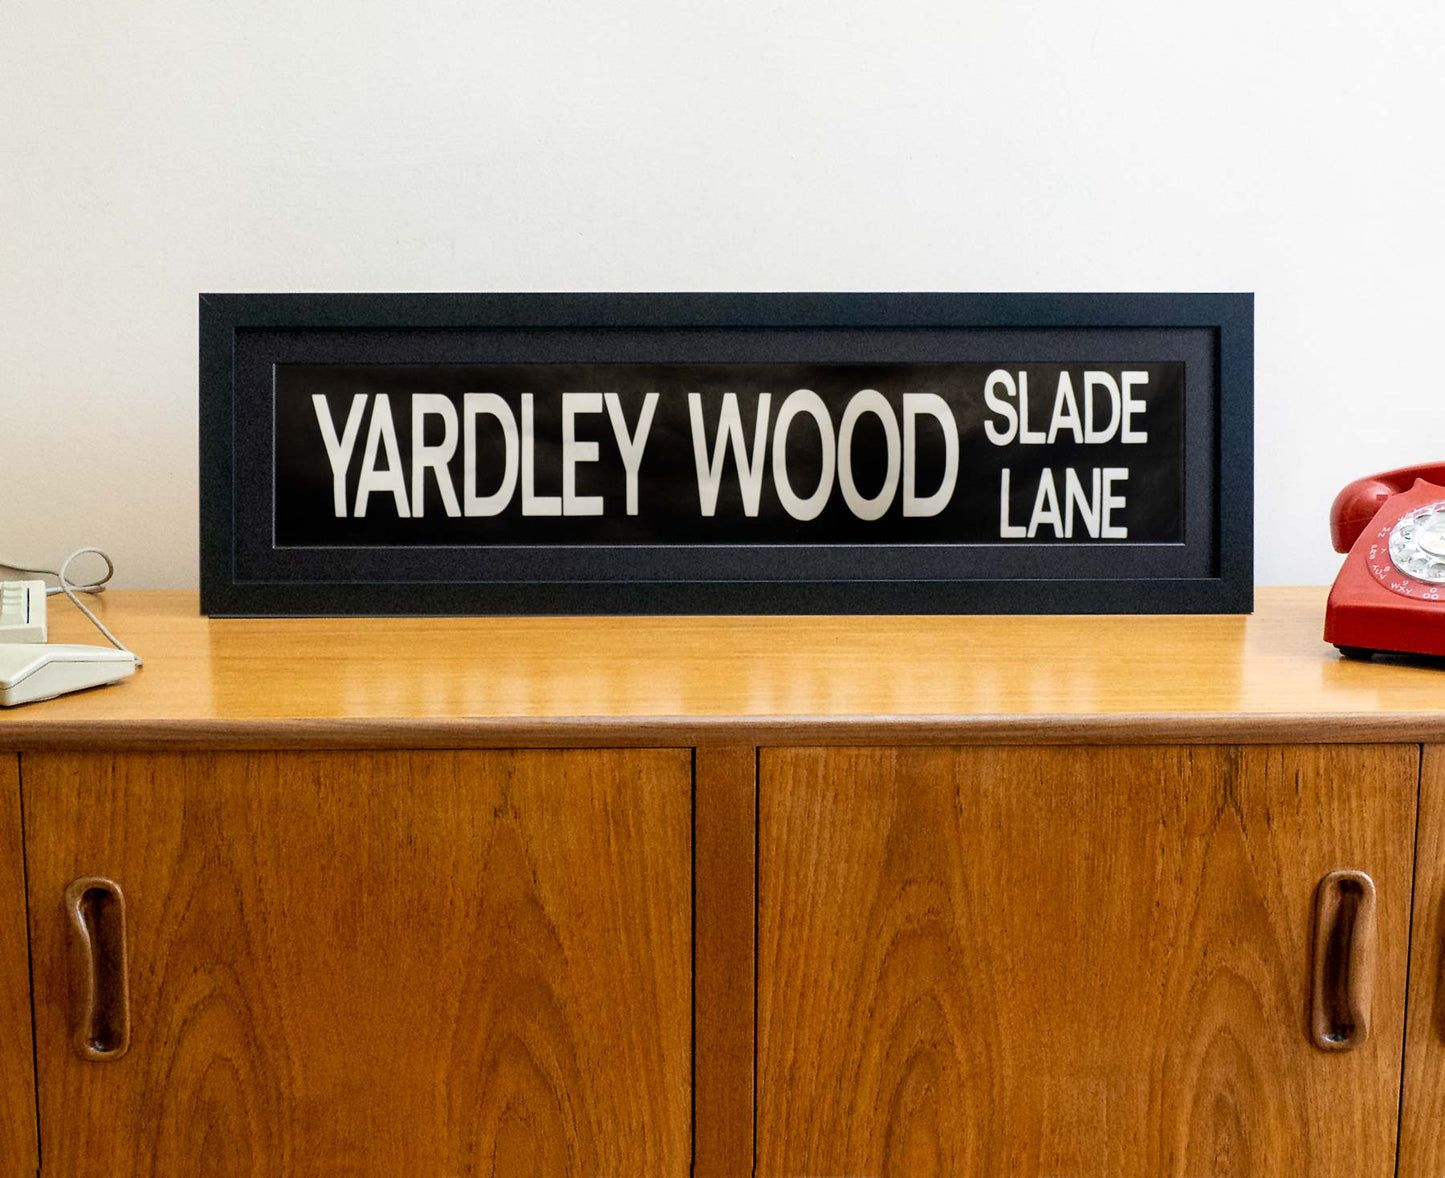 Yardley Wood Slade Lane 1990s framed original bus blind